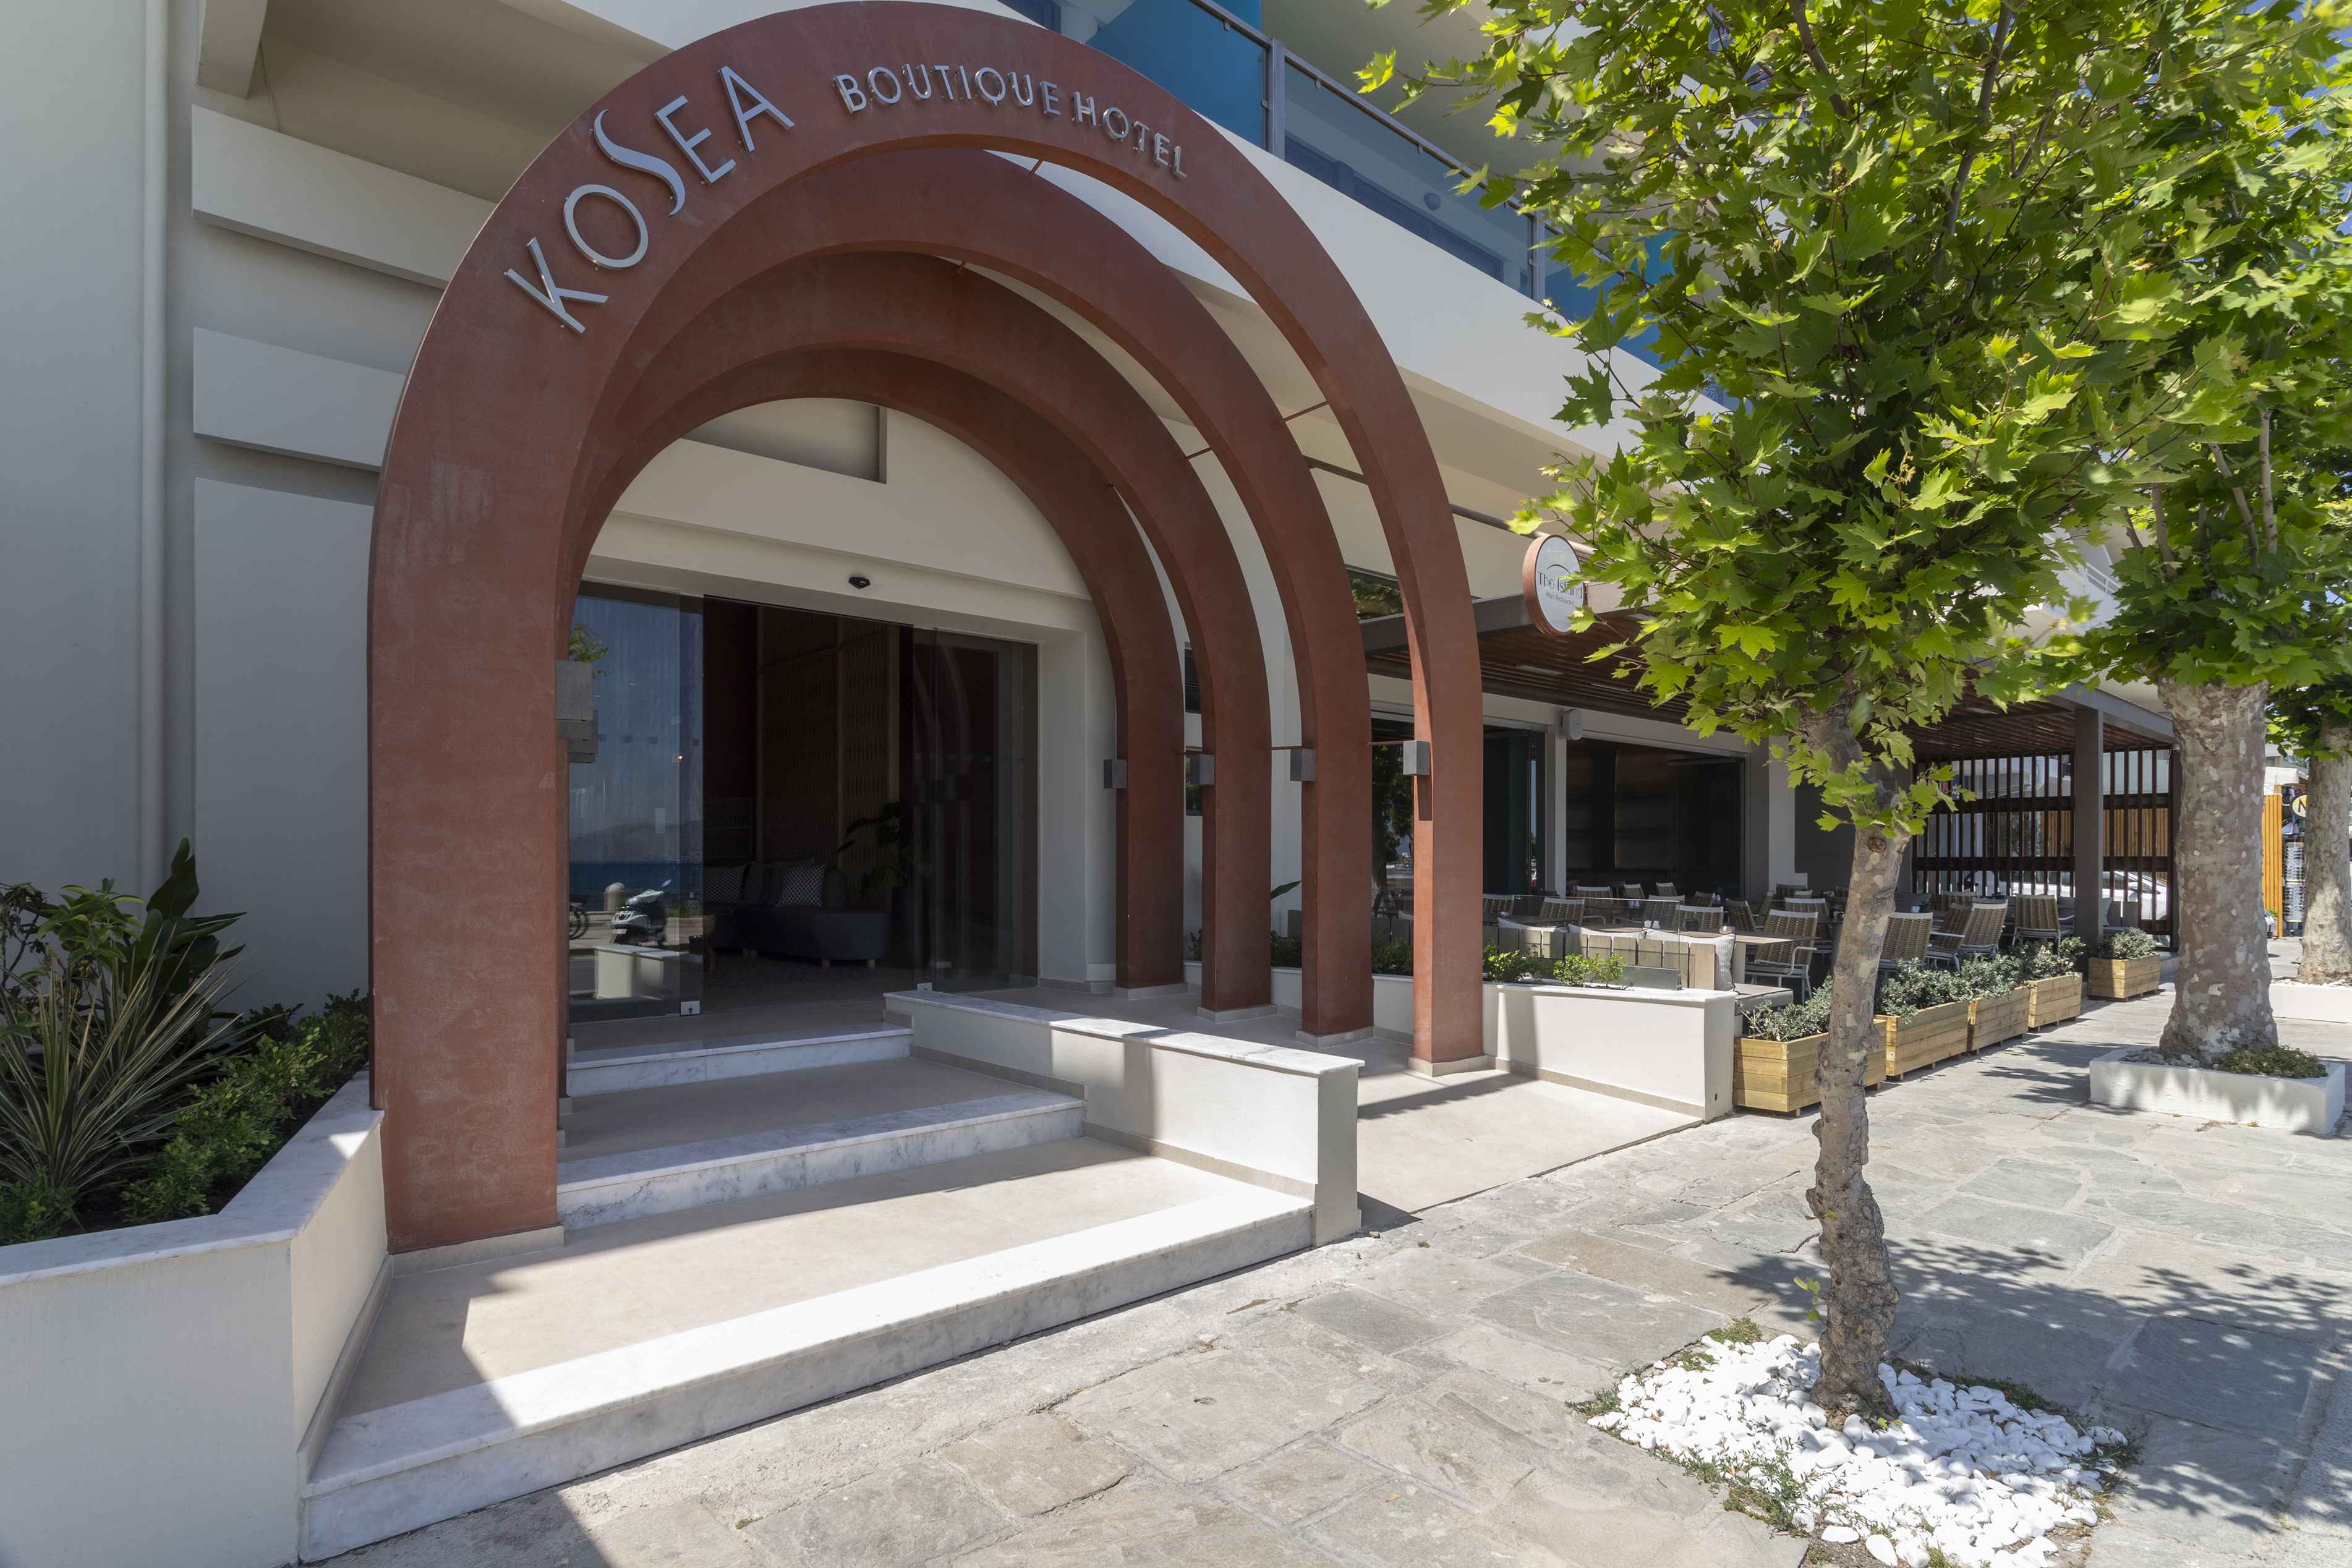 KoSea Boutique Hotel (Kos)